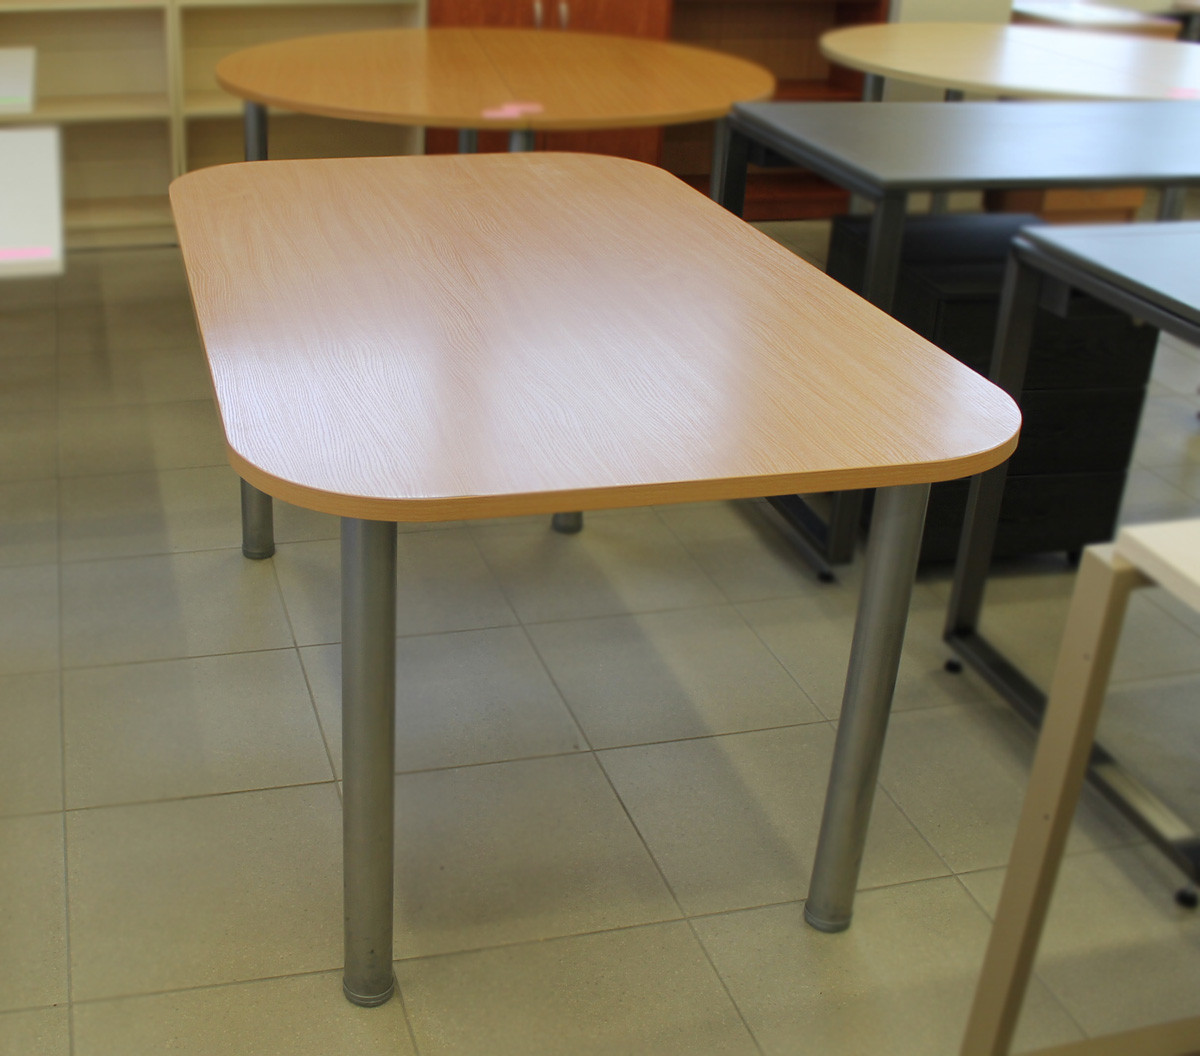 Posėdžių stalas, tiesus su apvalintais kampais ND-ST-731 1500x900x740 bukas